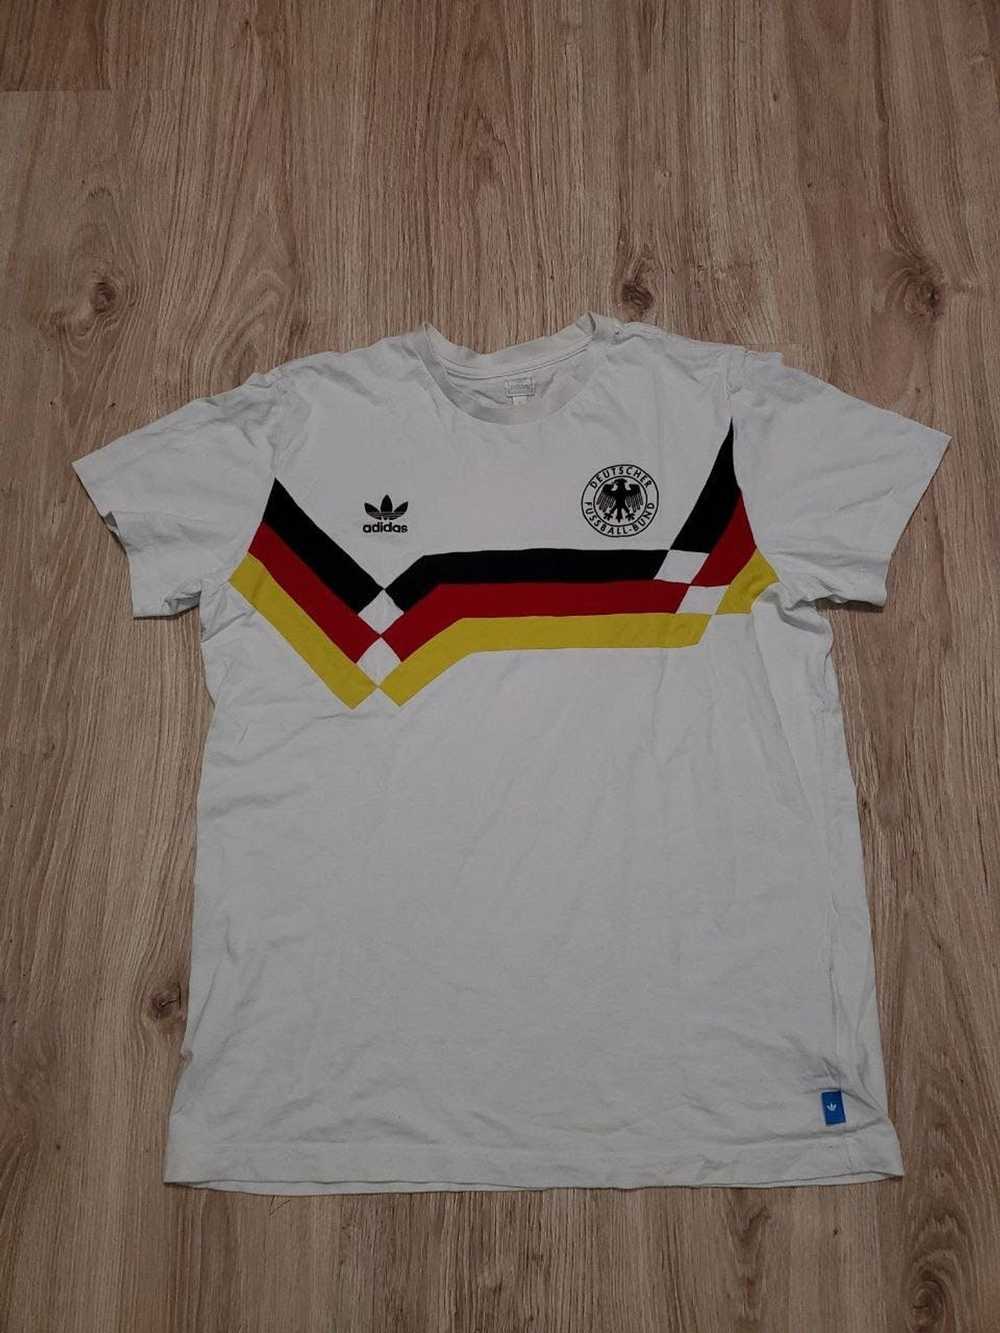 Adidas × Soccer Jersey × Vintage Vintage t-shirt … - image 1